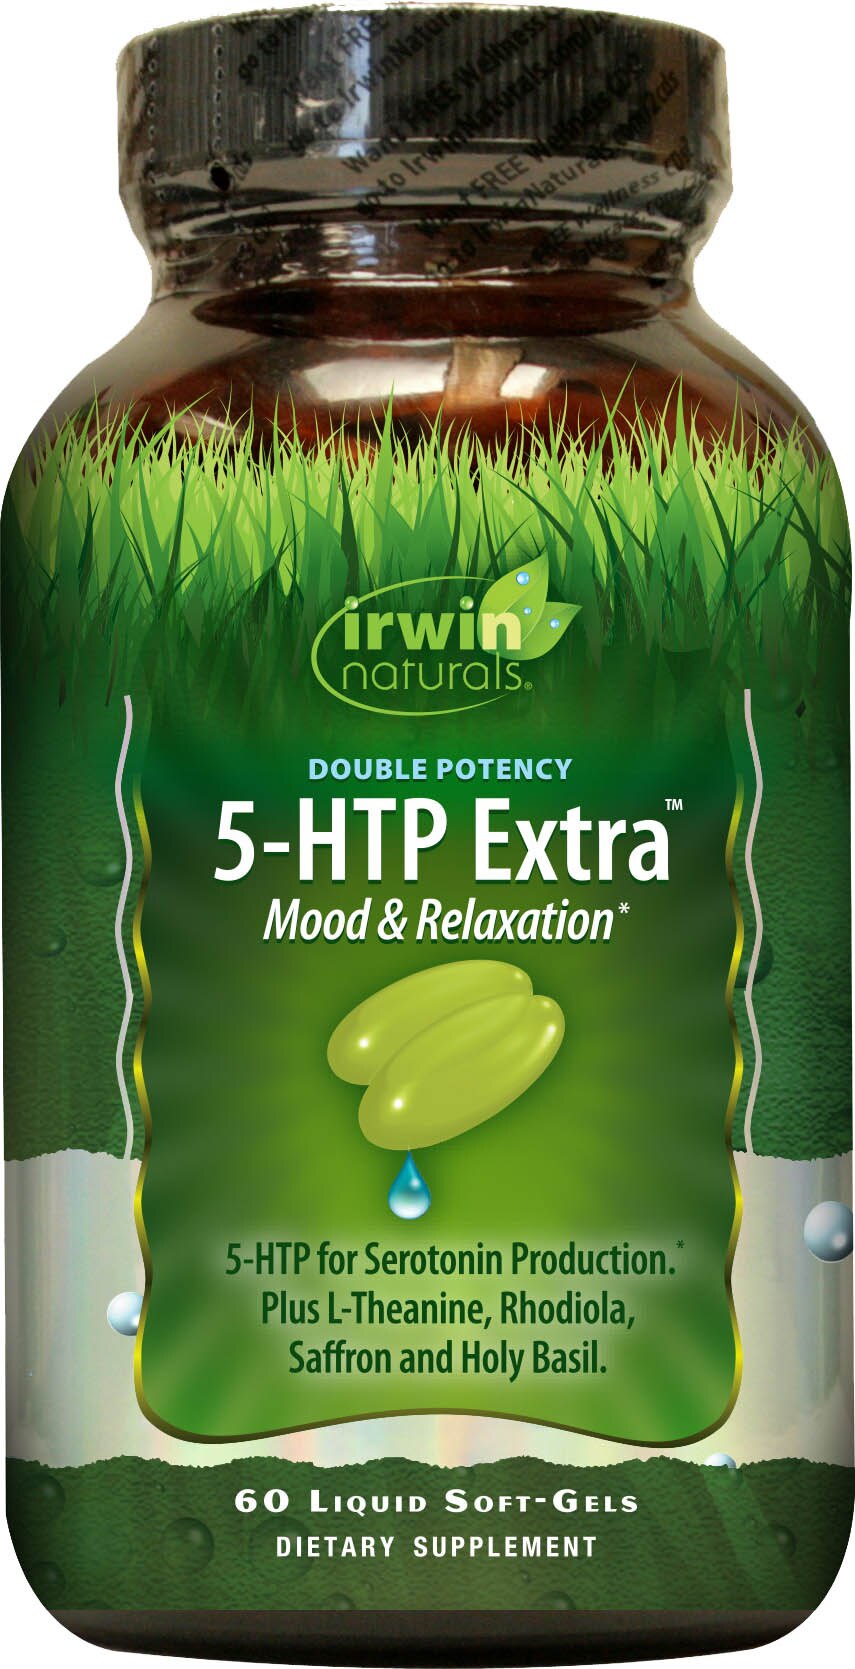 Irwin Naturals Double Potency 5-HTP Extra plus BioPerine - Suplemento dietario en cápsulas blandas, 60 u.